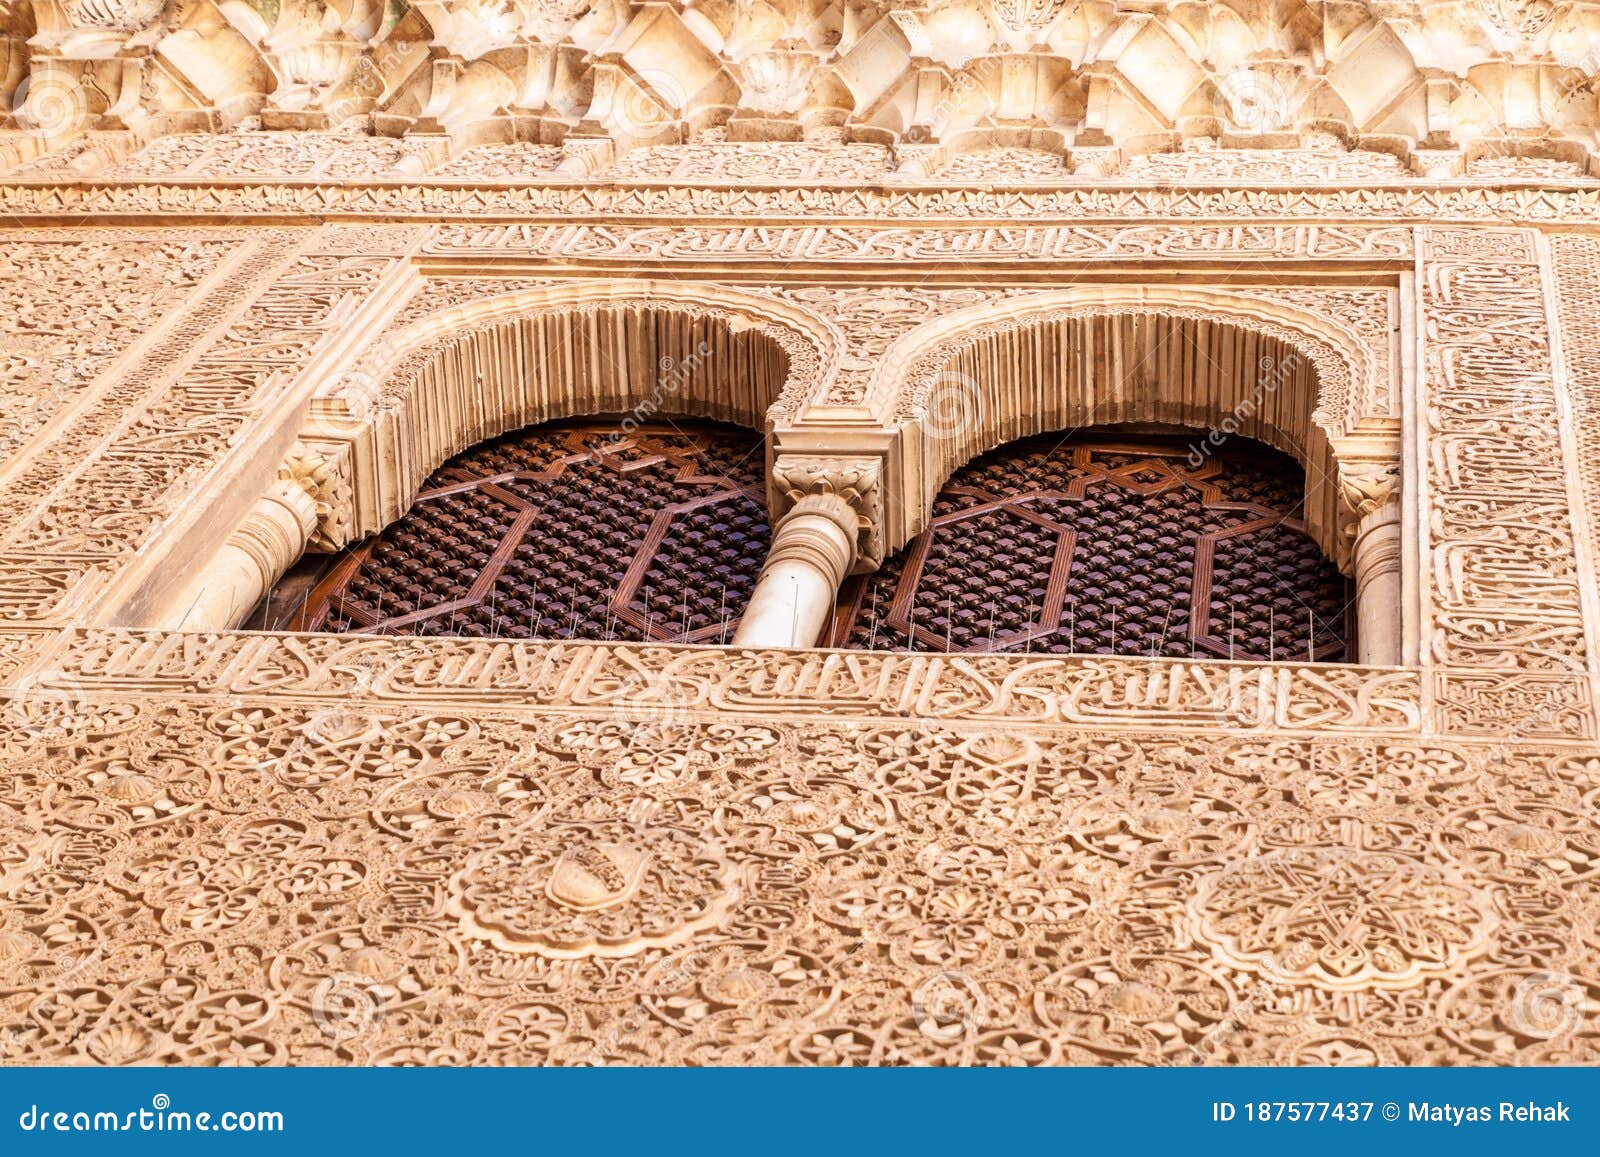 wall decorations of nasrid palaces (palacios nazaries) at alhambra in granada, spa